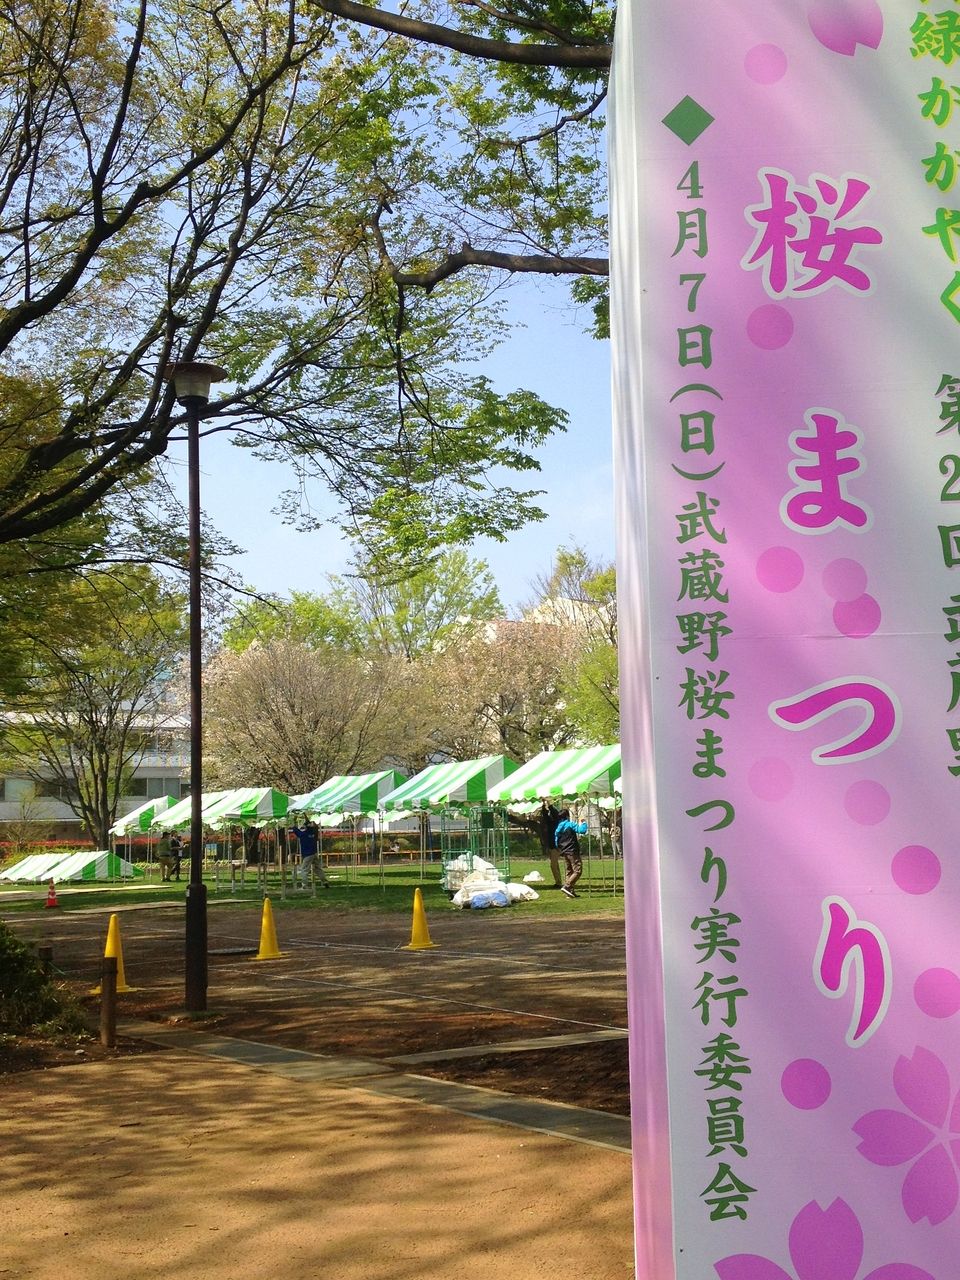 武蔵野市の「武蔵野桜まつり」は4月7日に決定。楽しいイベントですよ